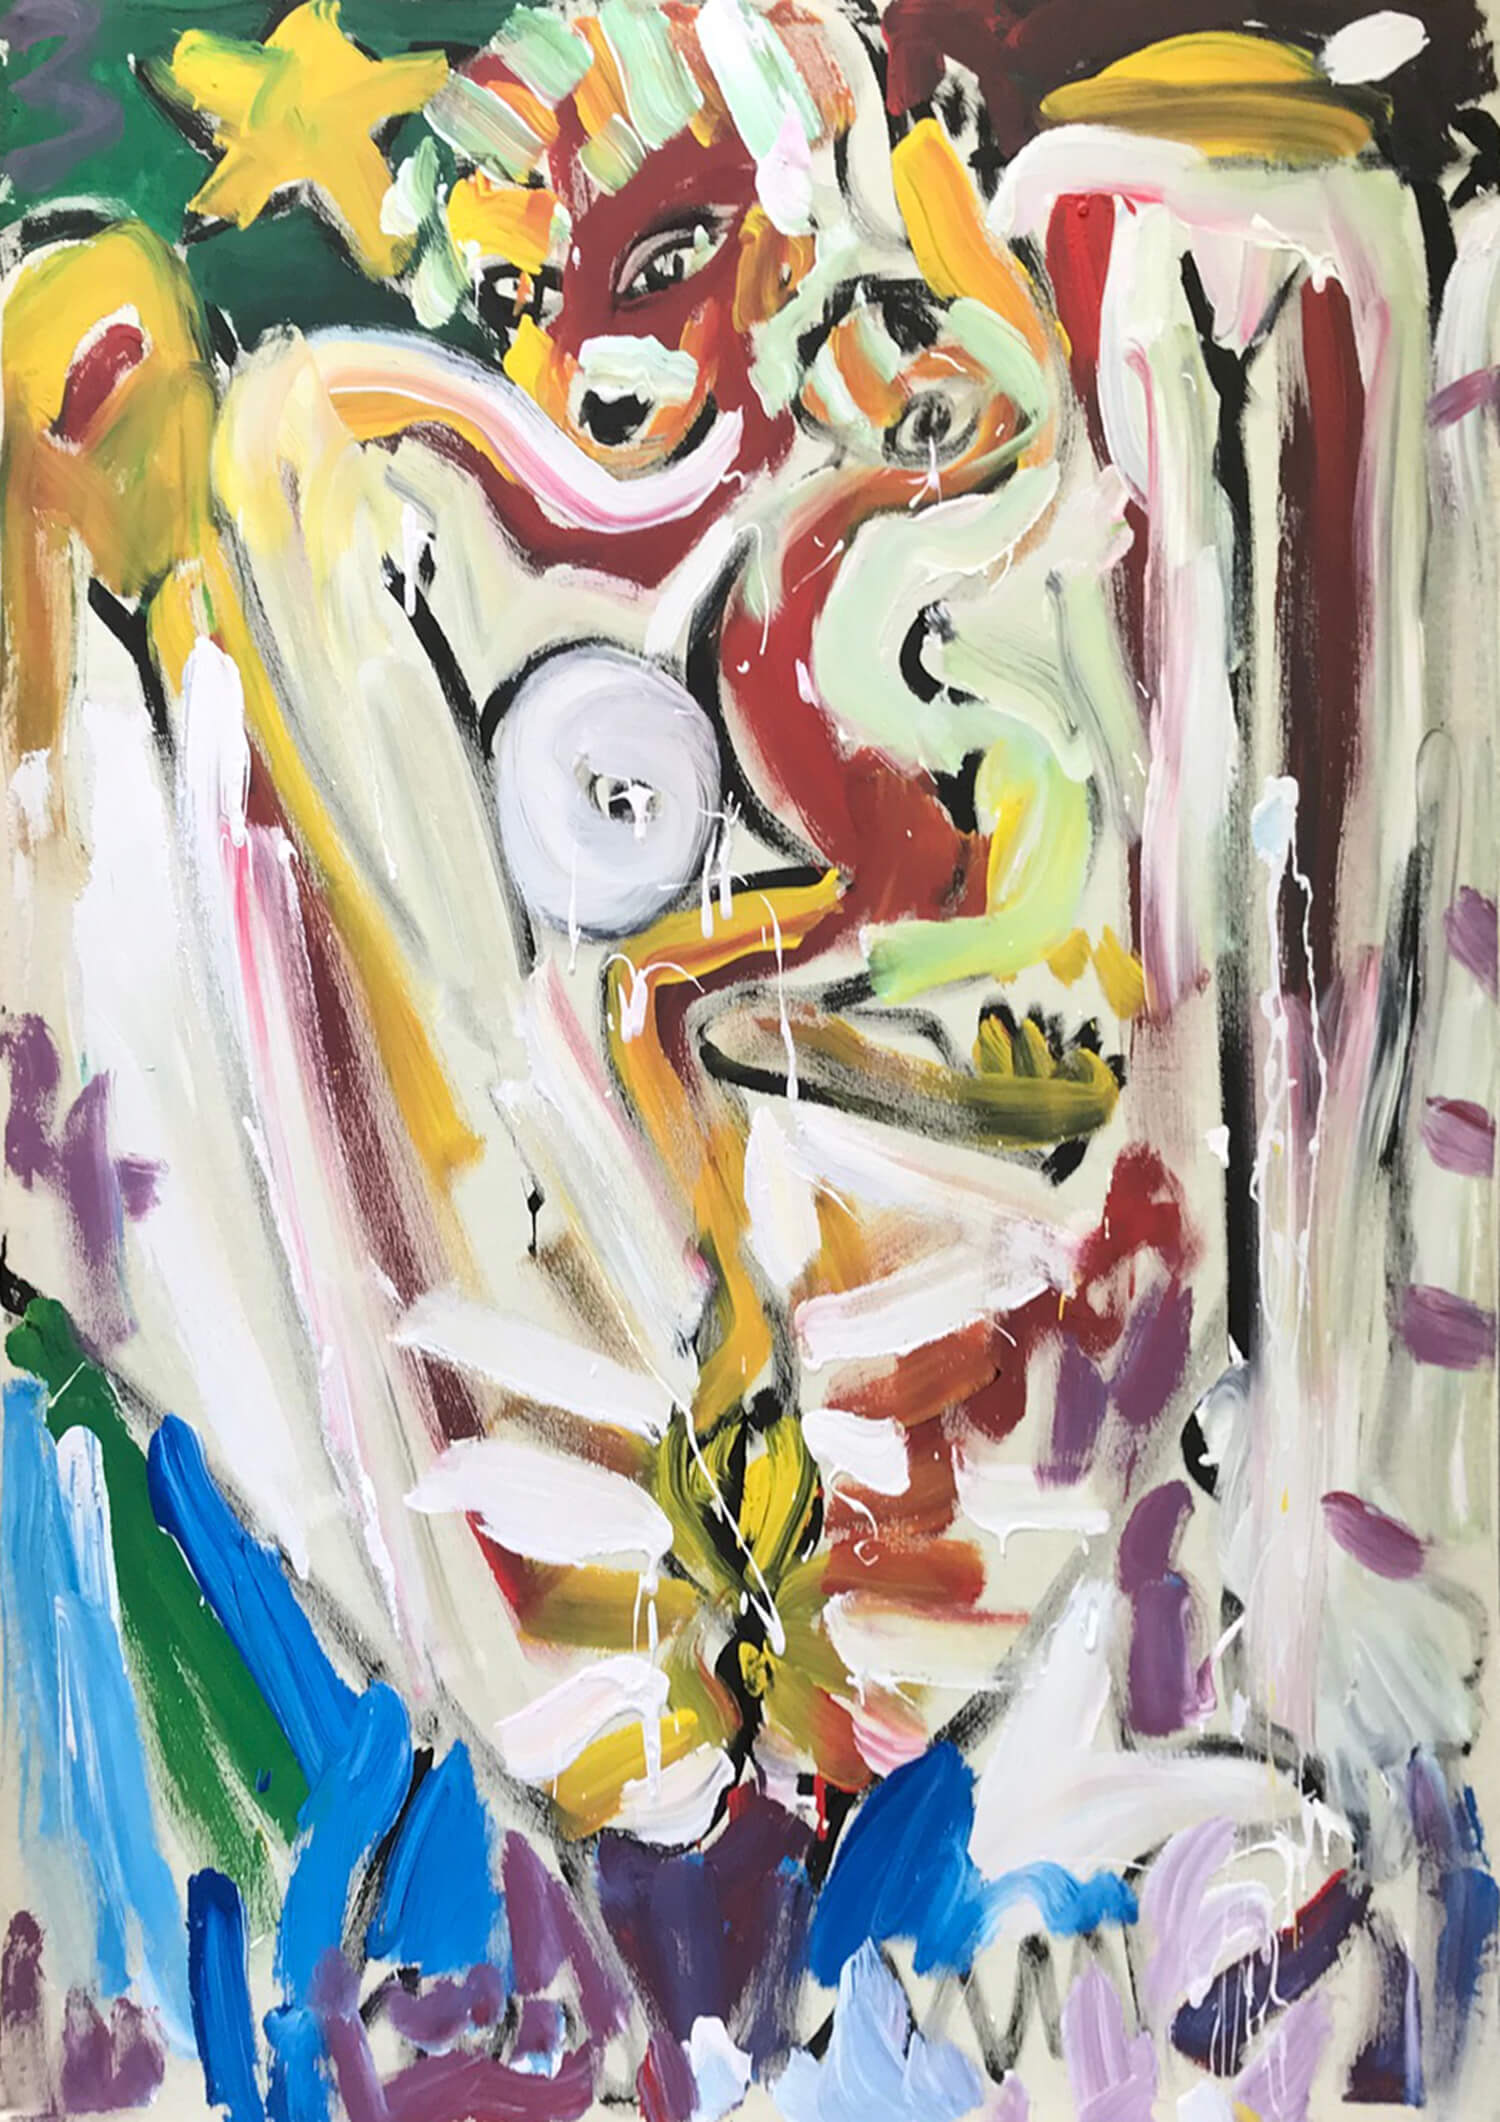 Andreas Kaps, o. T., 1986, emulsion paint on nettle, 147 x 112 cm